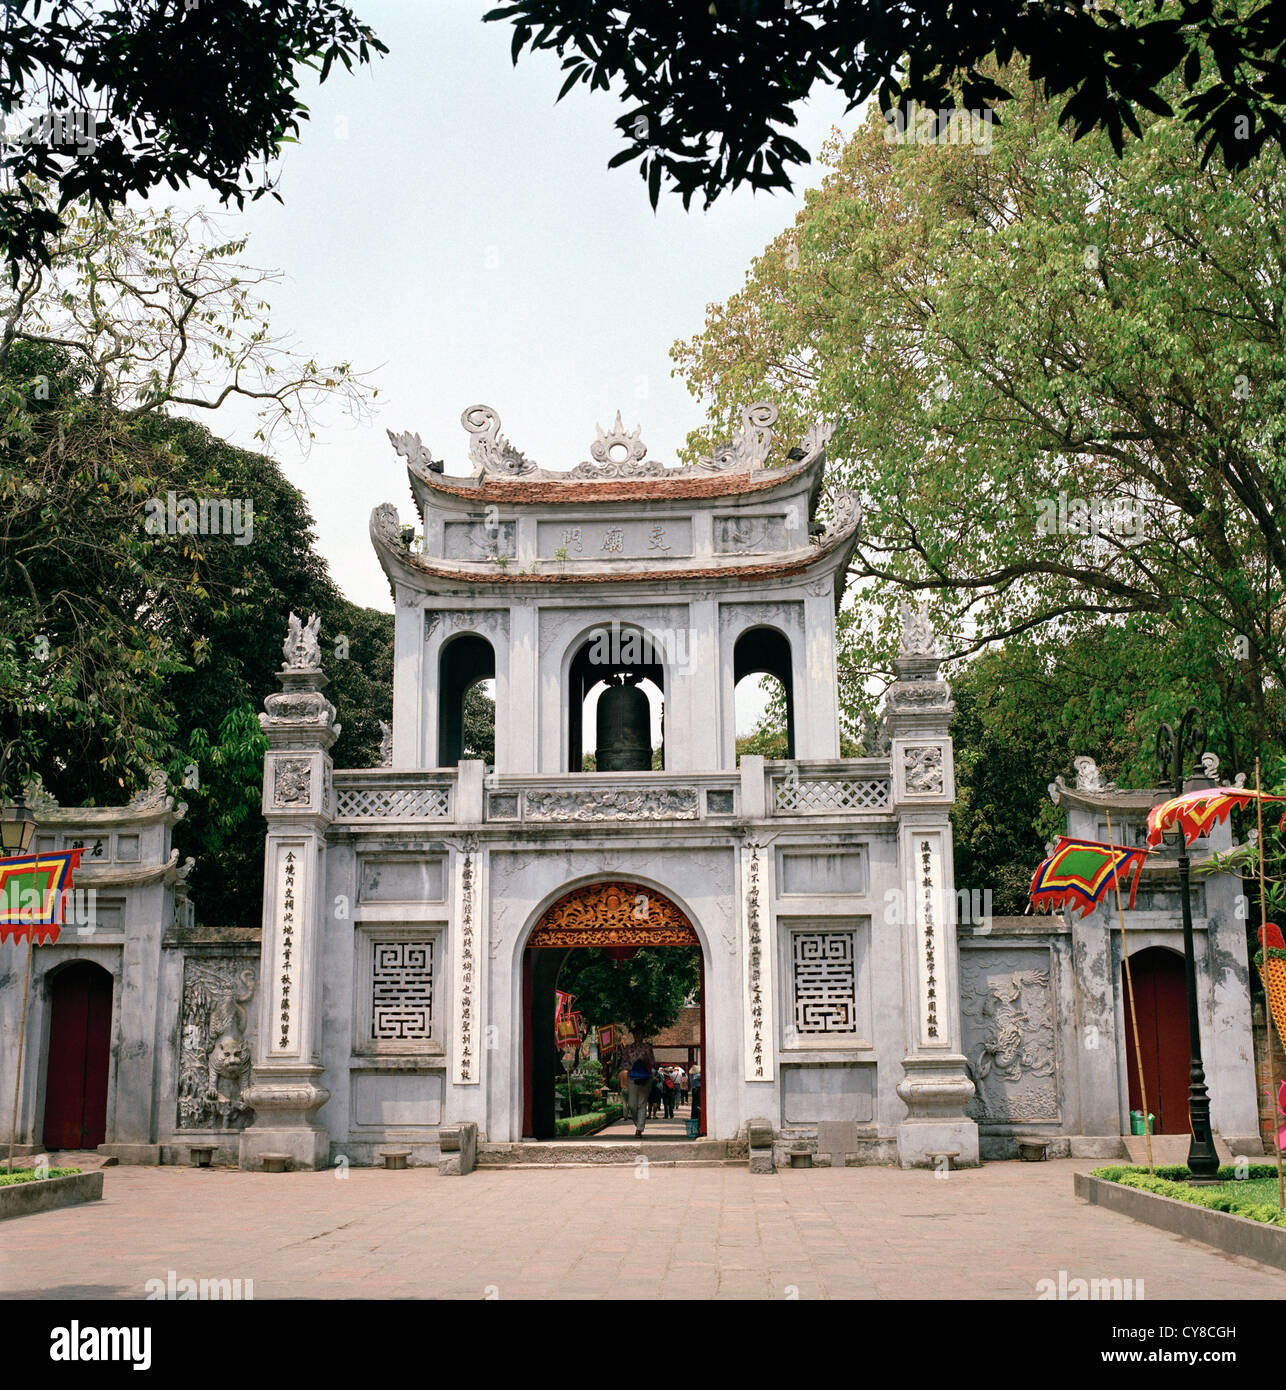 Temple de la littérature à Hanoi au Vietnam en Extrême-Orient asie du sud-est. L'histoire de l'architecture historique de la porte de la pagode vietnamienne style Voyage Asie Banque D'Images